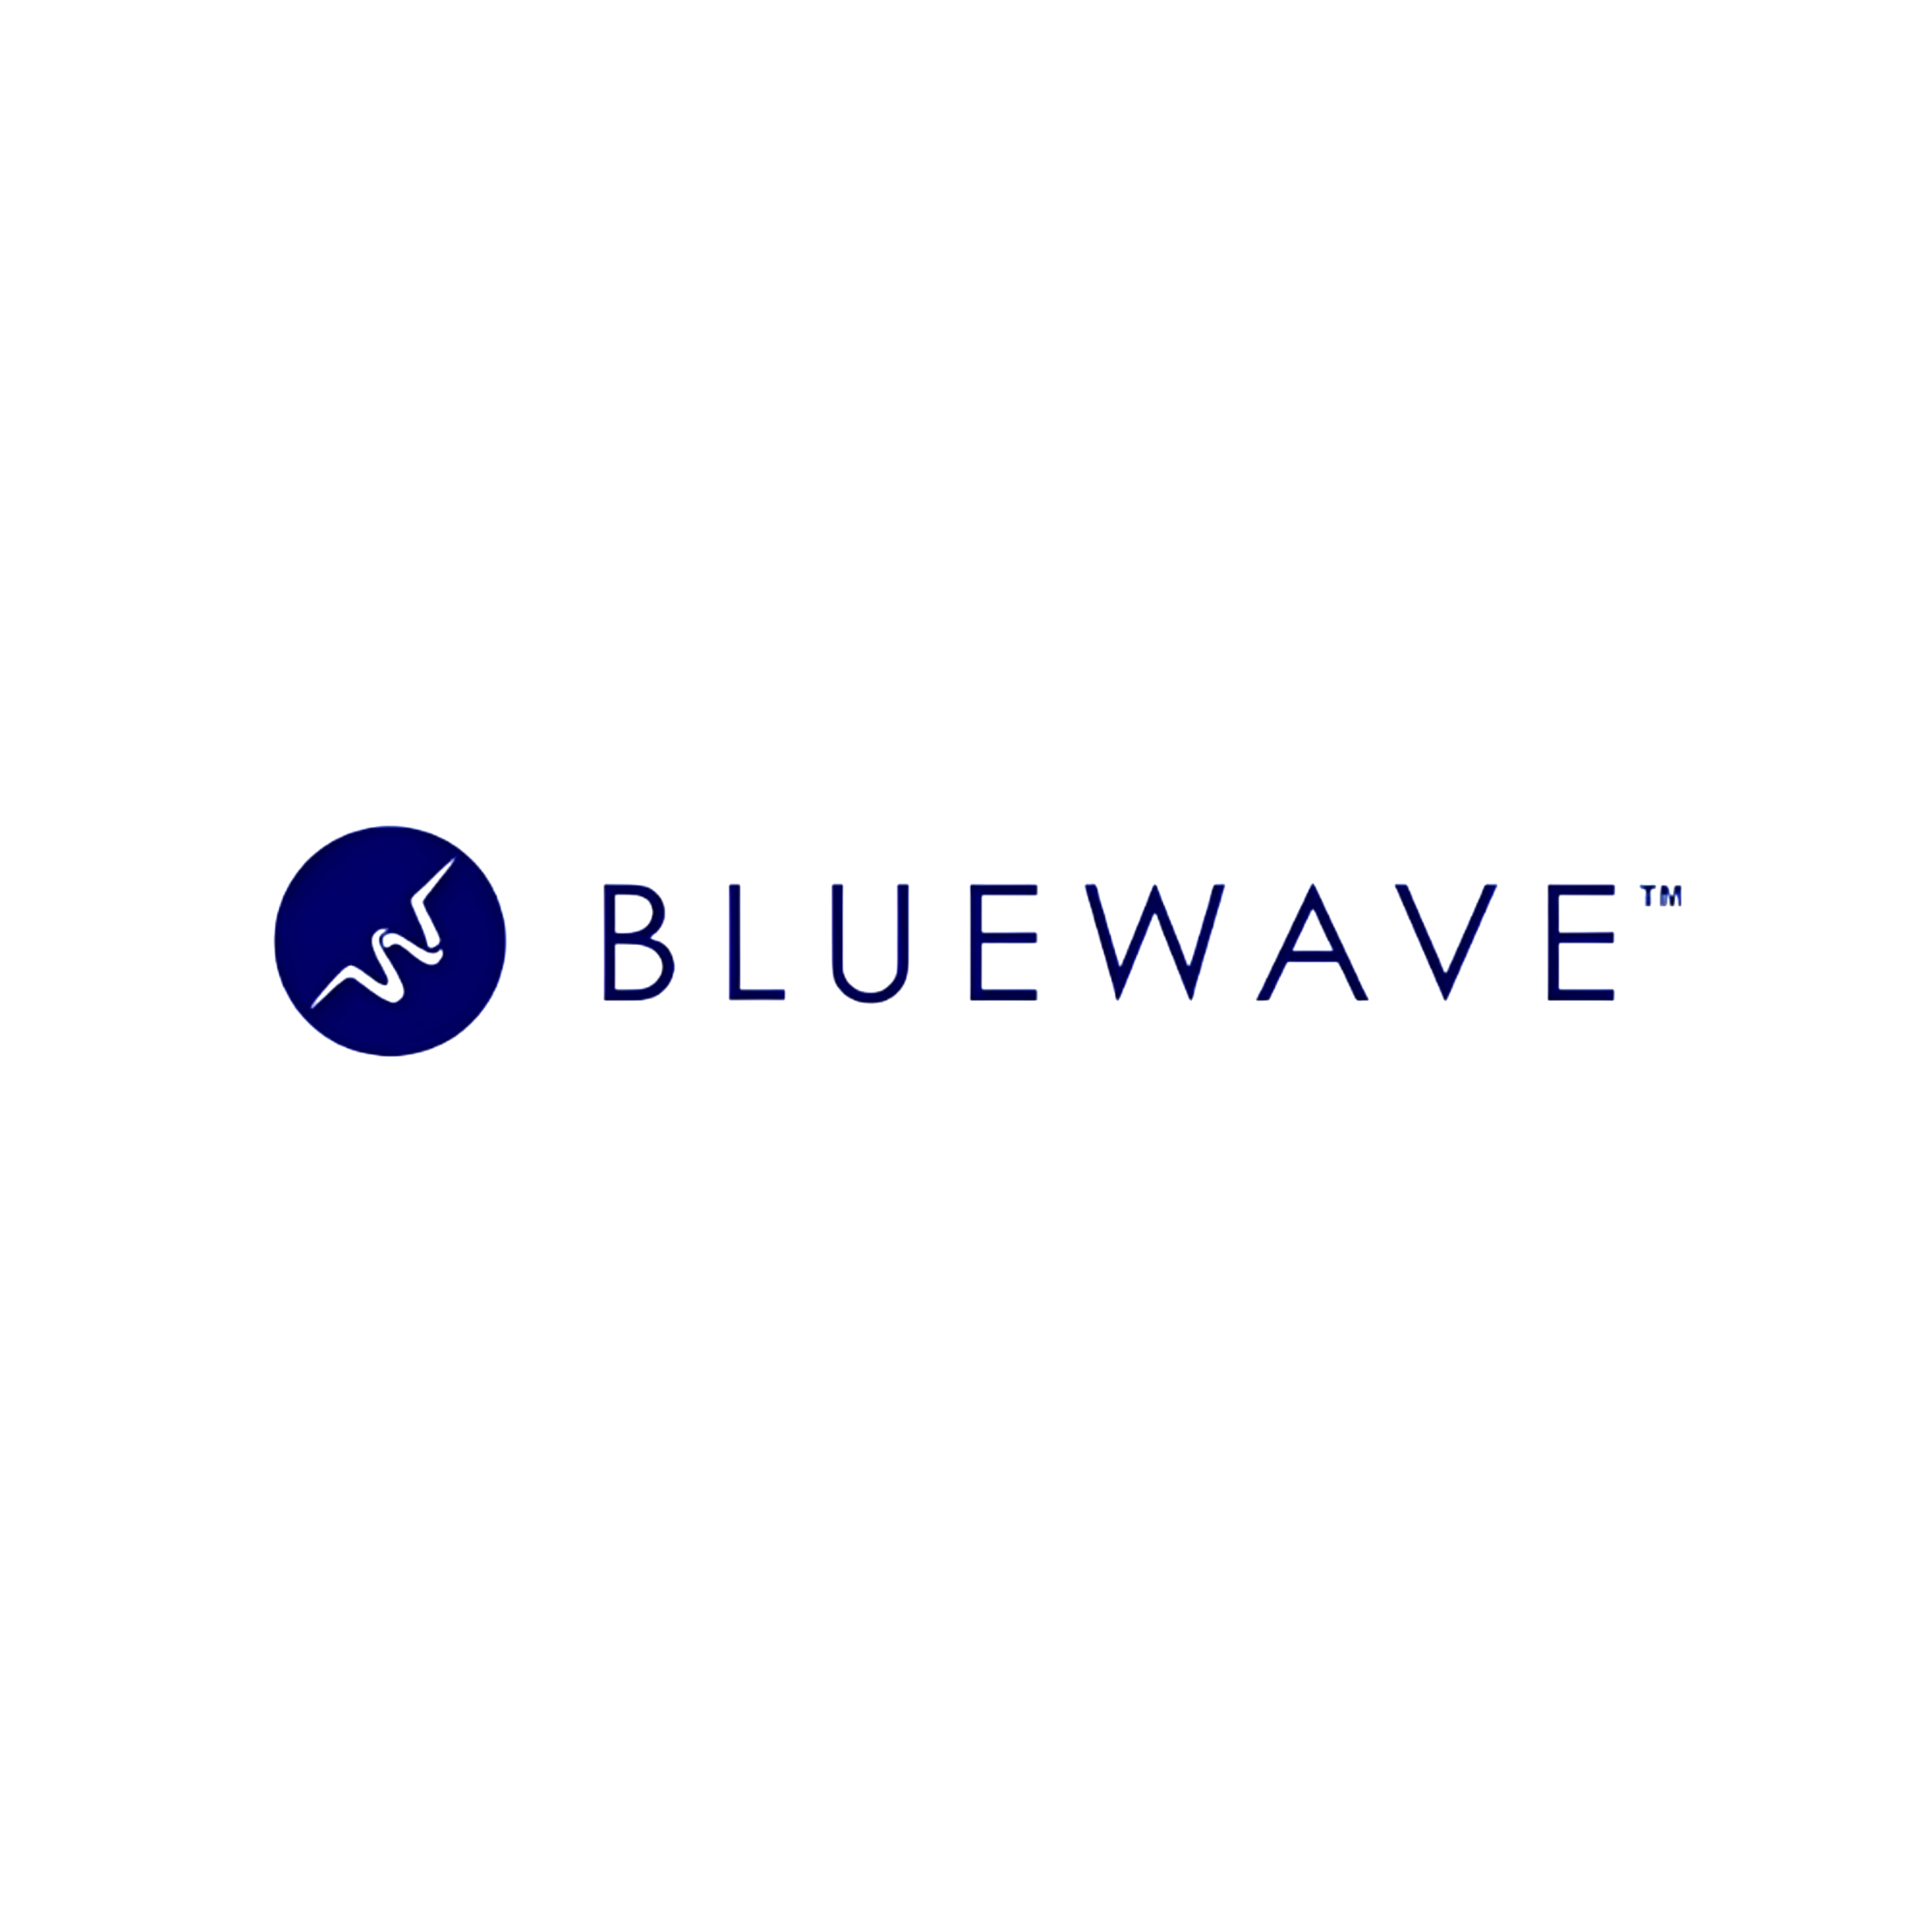 Bluewave